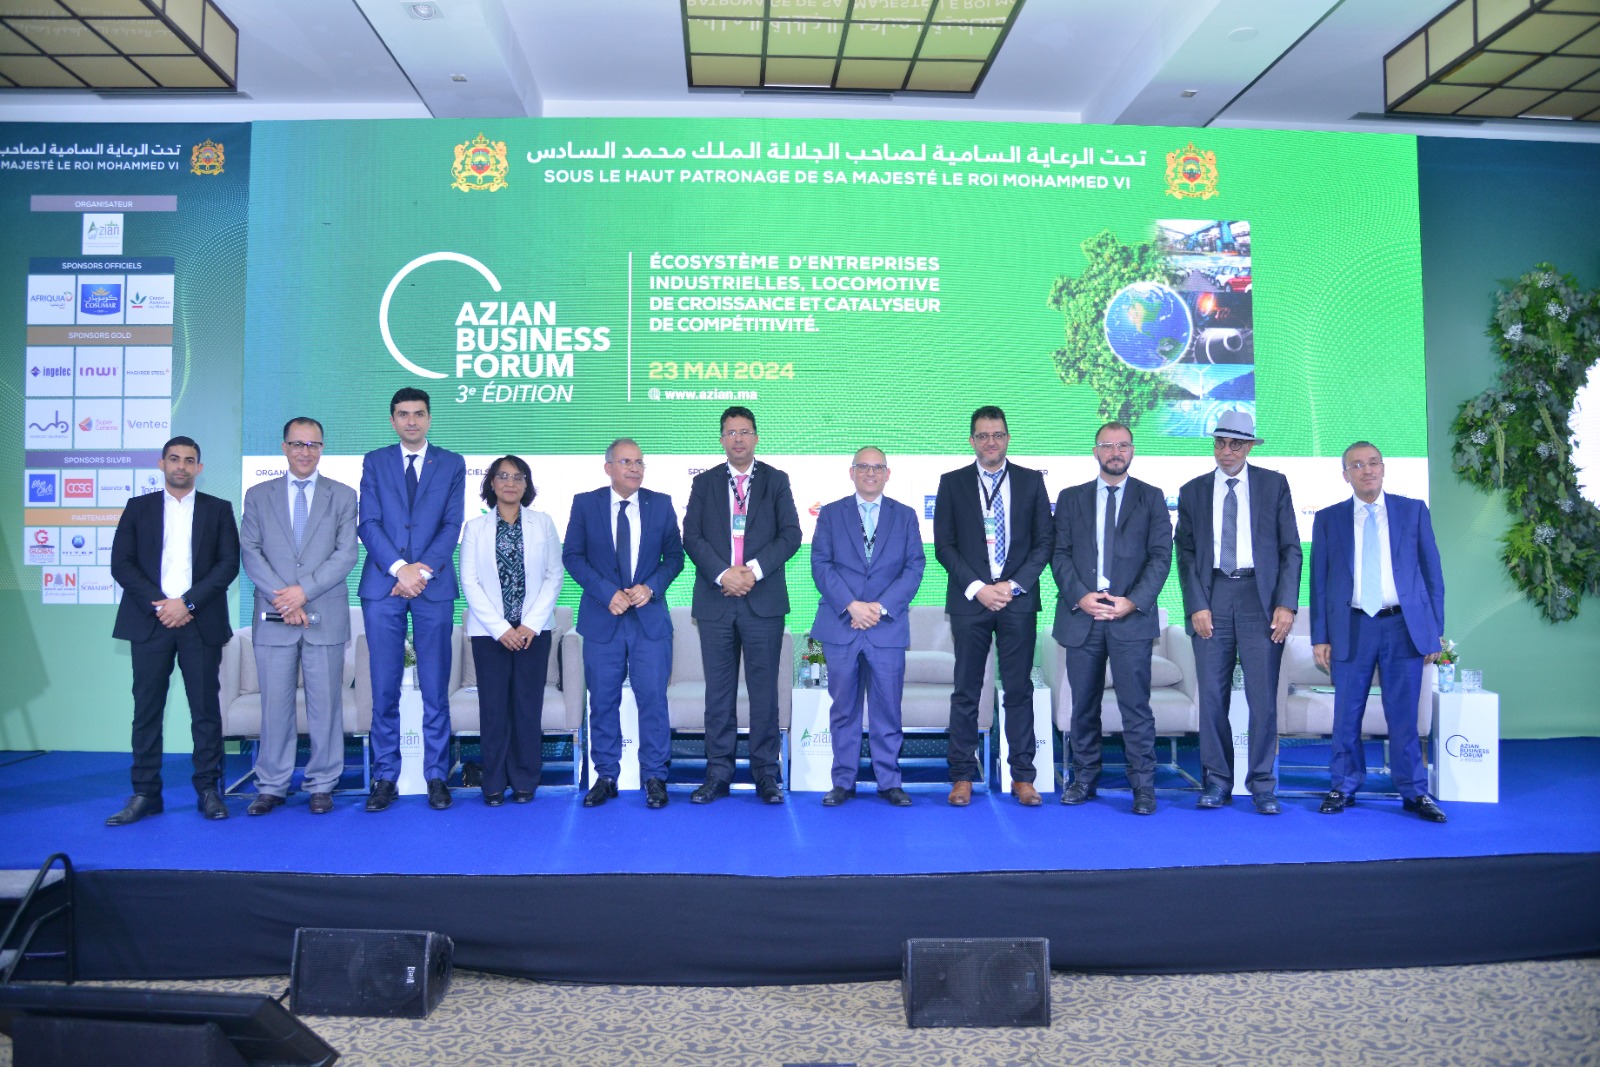 Azian Business Forum 2024 : Une dynamique d’innovation et de croissance industrielle à Casablanca